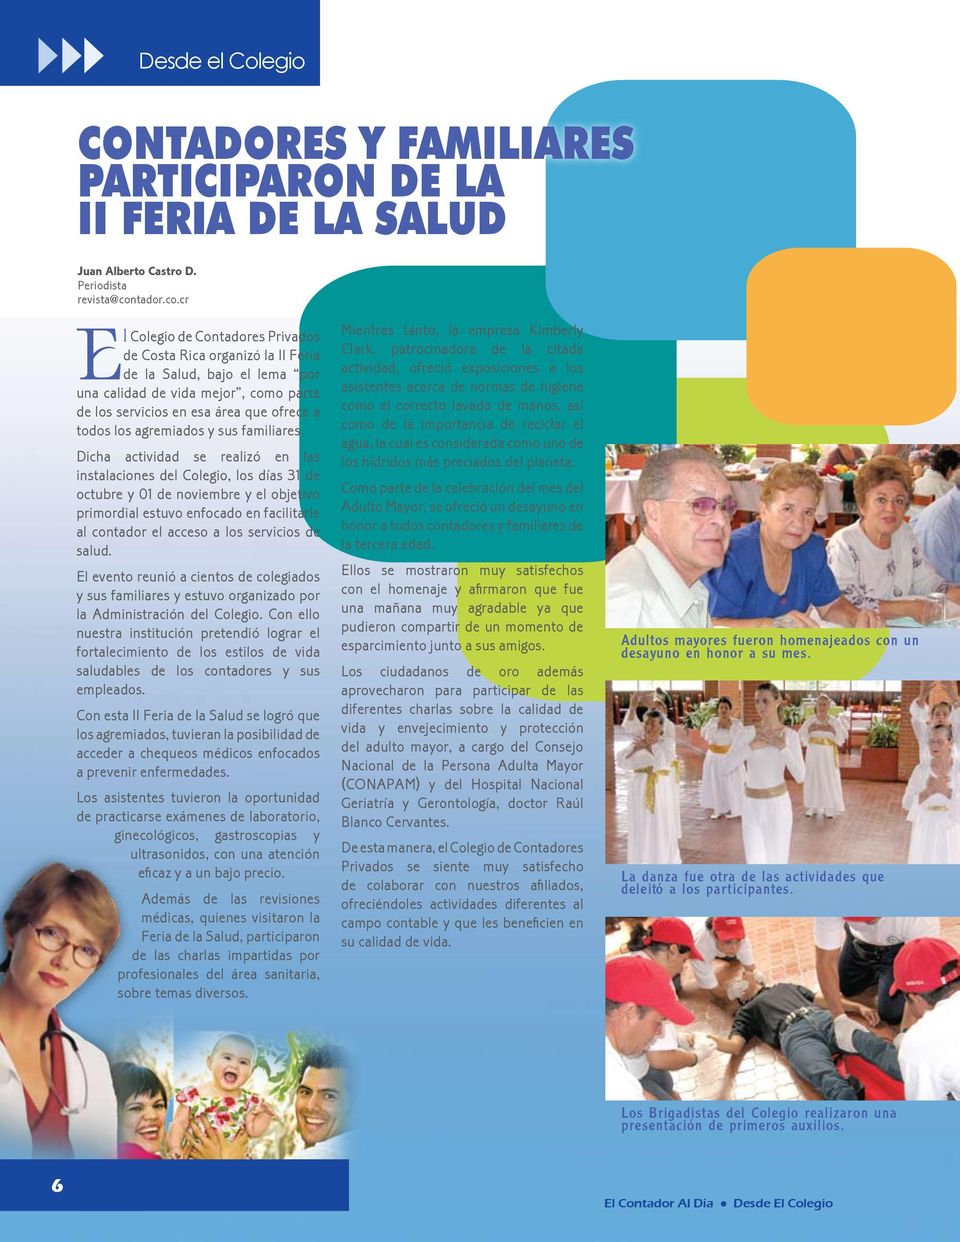 cr El Colegio de Contadores Privados de Costa Rica organizó la II Feria de la Salud, bajo el lema por una calidad de vida mejor, como parte de los servicios en esa área que ofrece a todos los